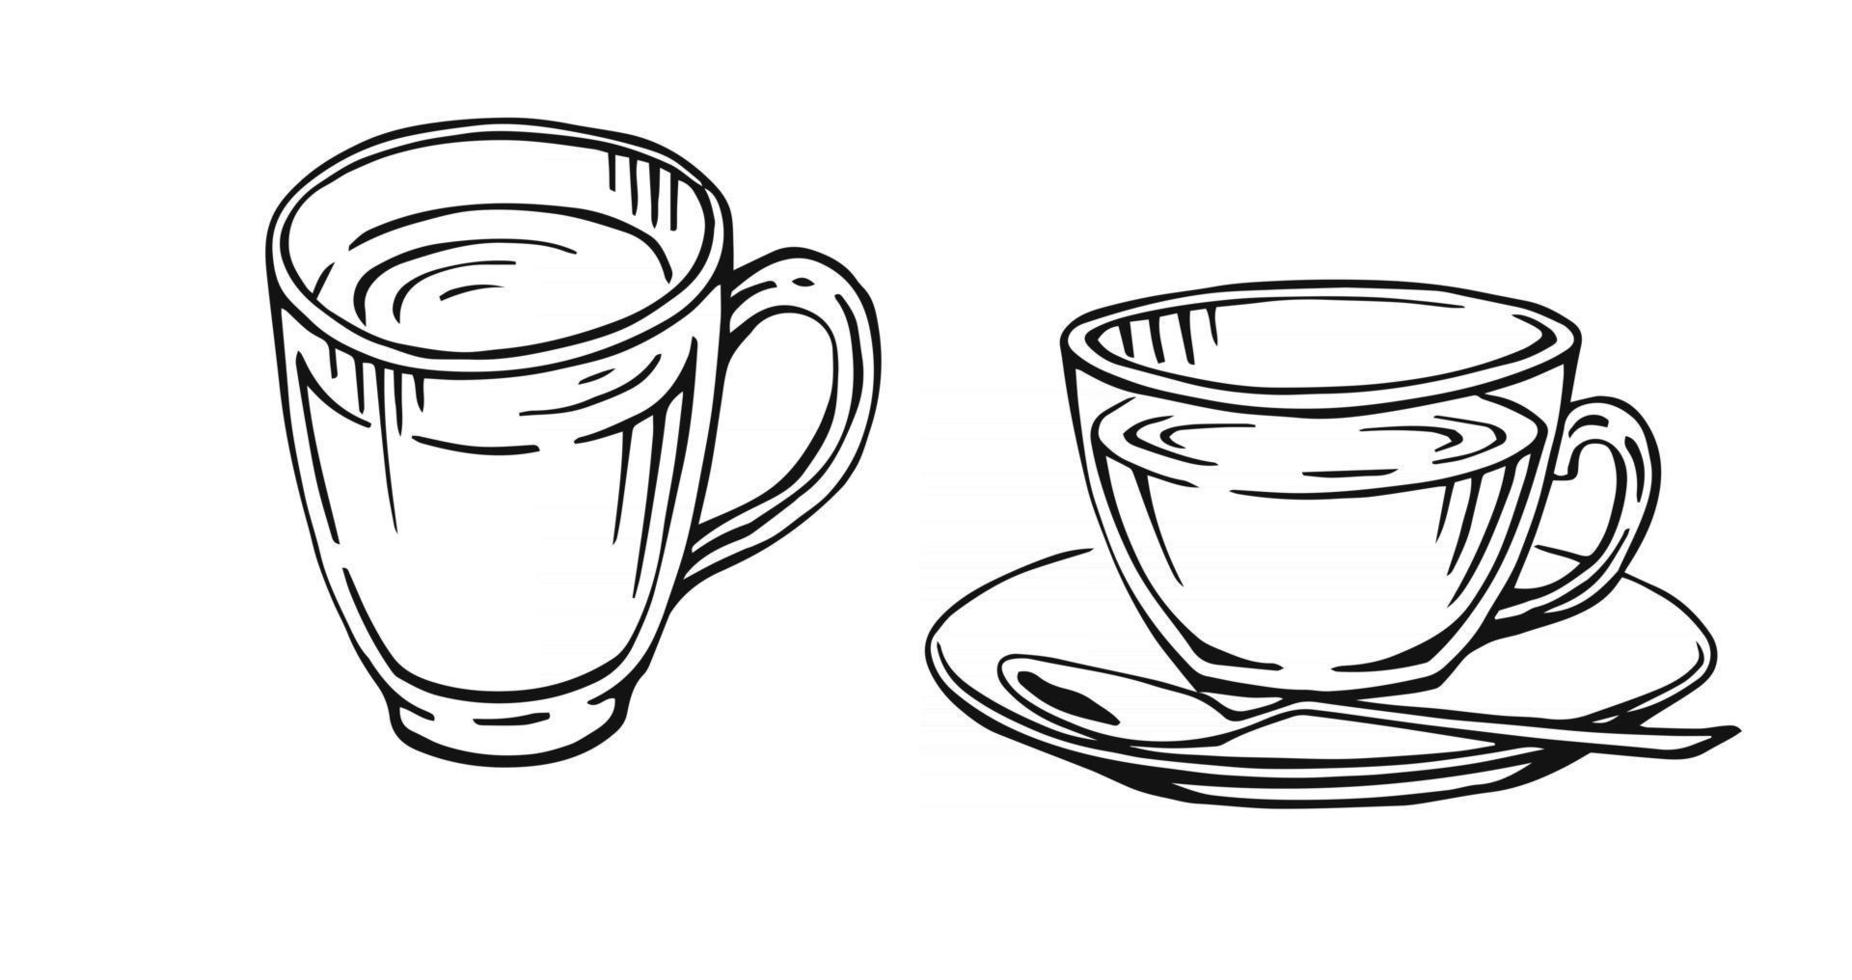 handritad kopp mugg varm dryck kaffe te etc koppar isolerad på vit bakgrund. tekopp kaffe kopp morgon färska drycker vektor